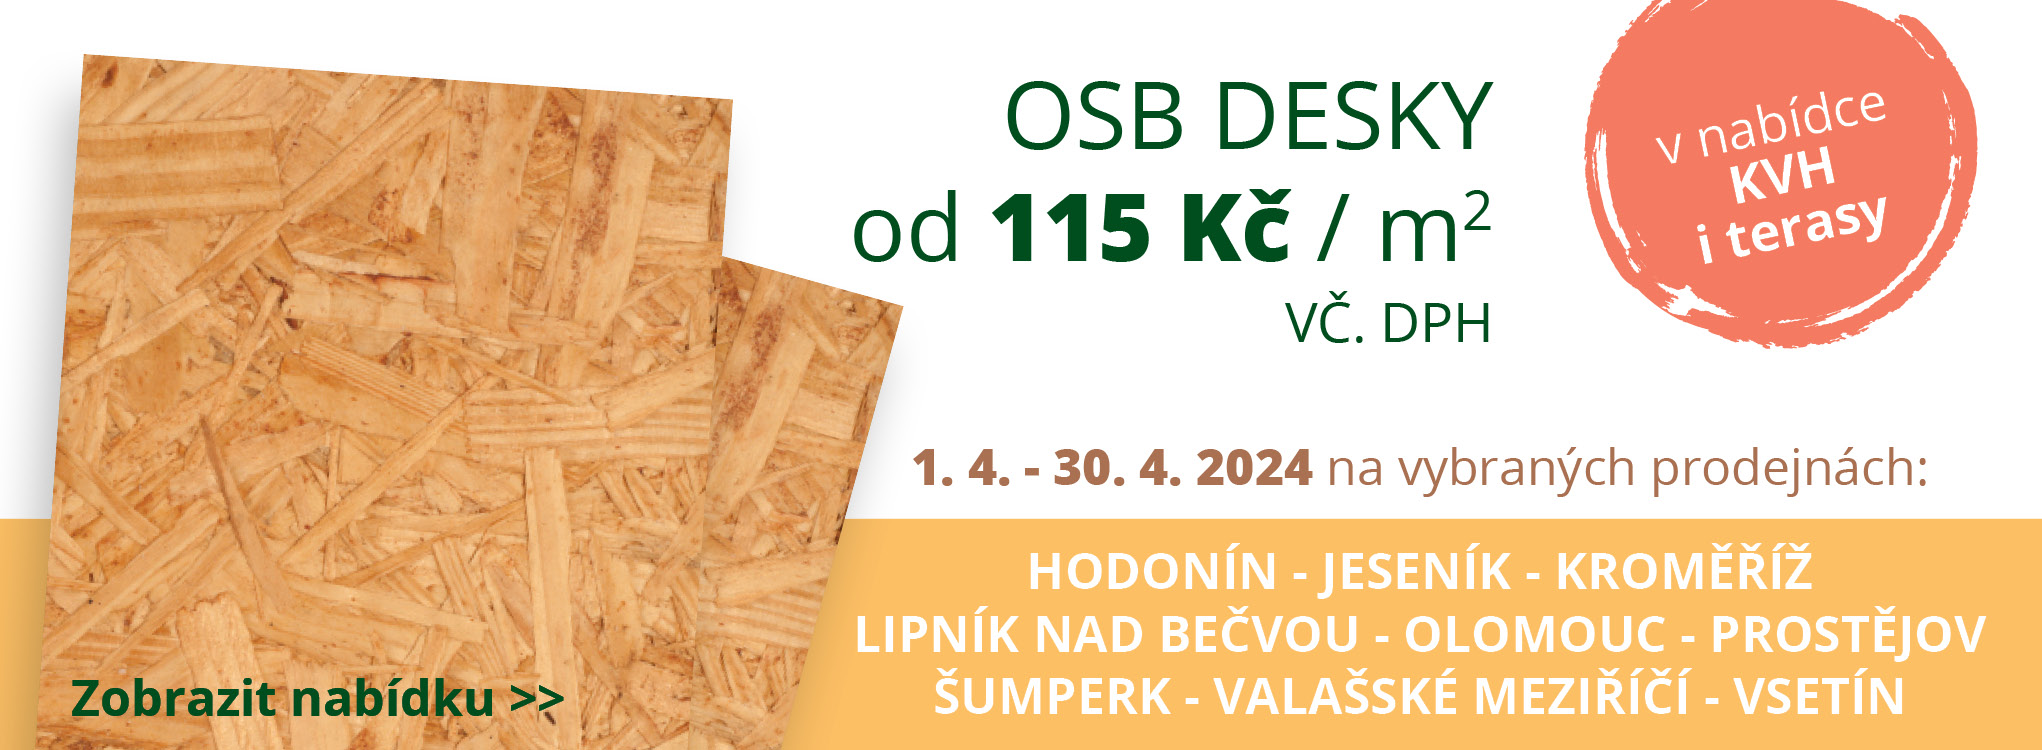 Akce OSB Olomoucko 04/2024